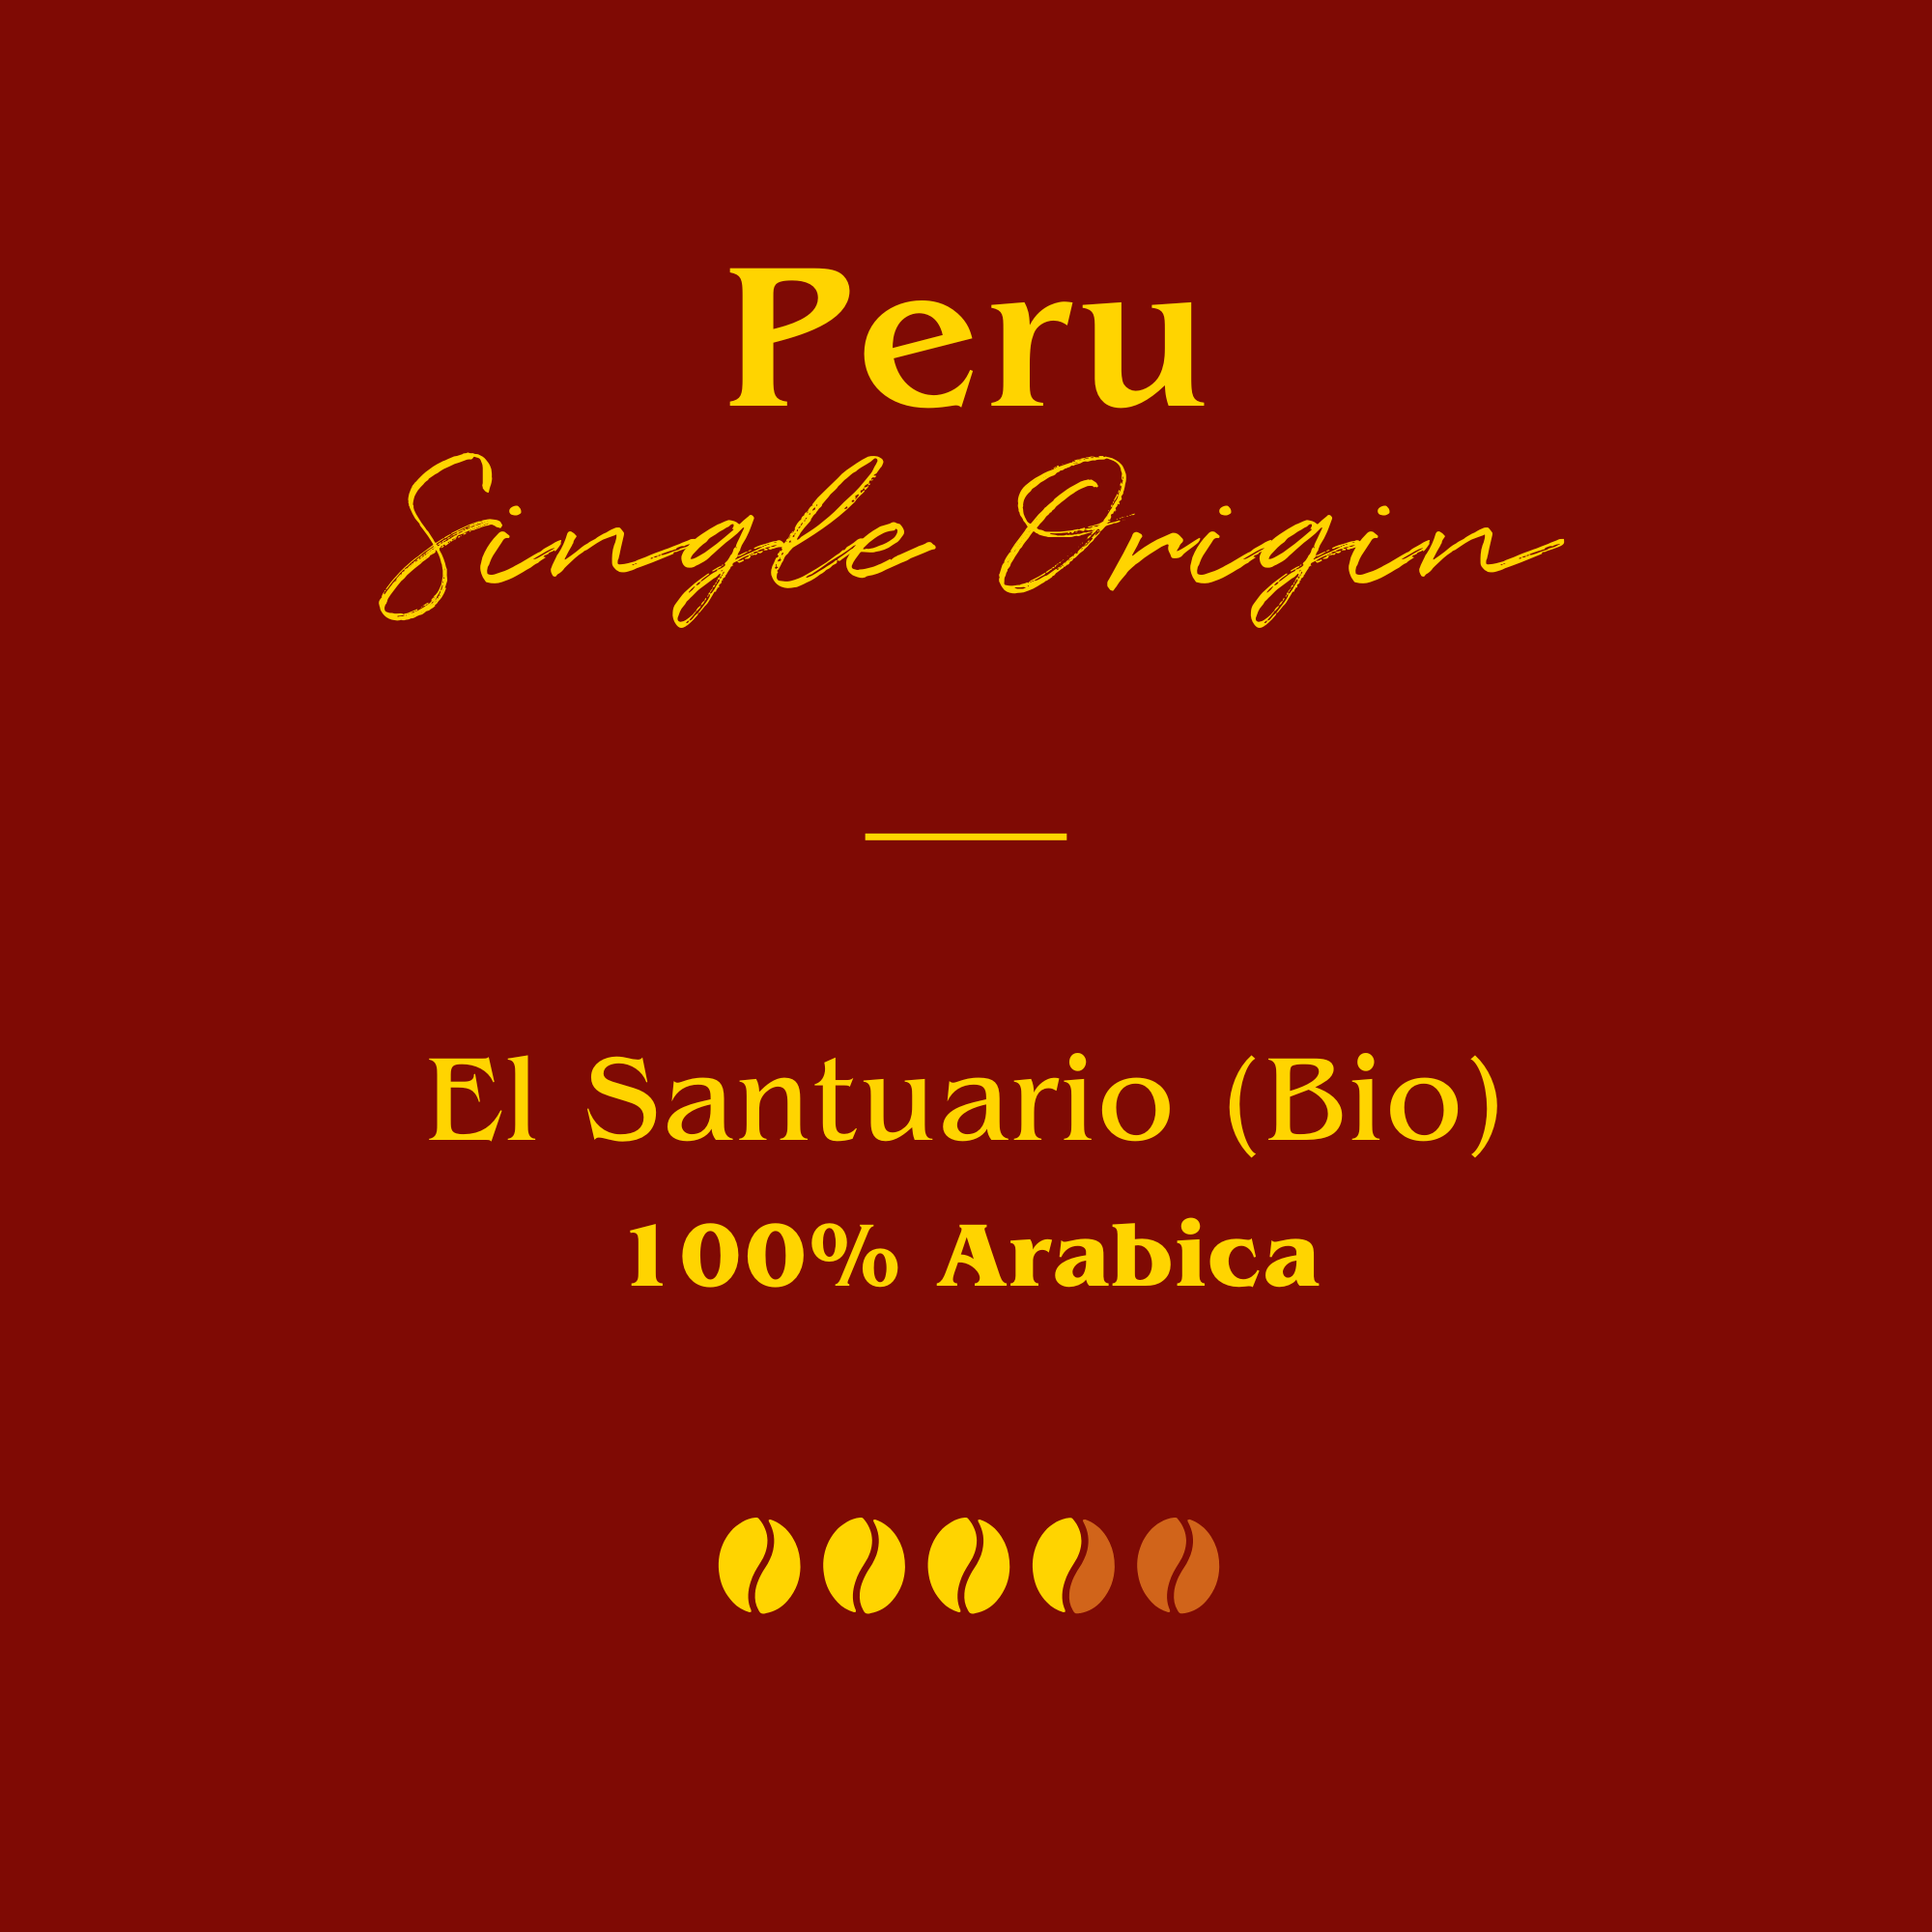 Peru koffie bio